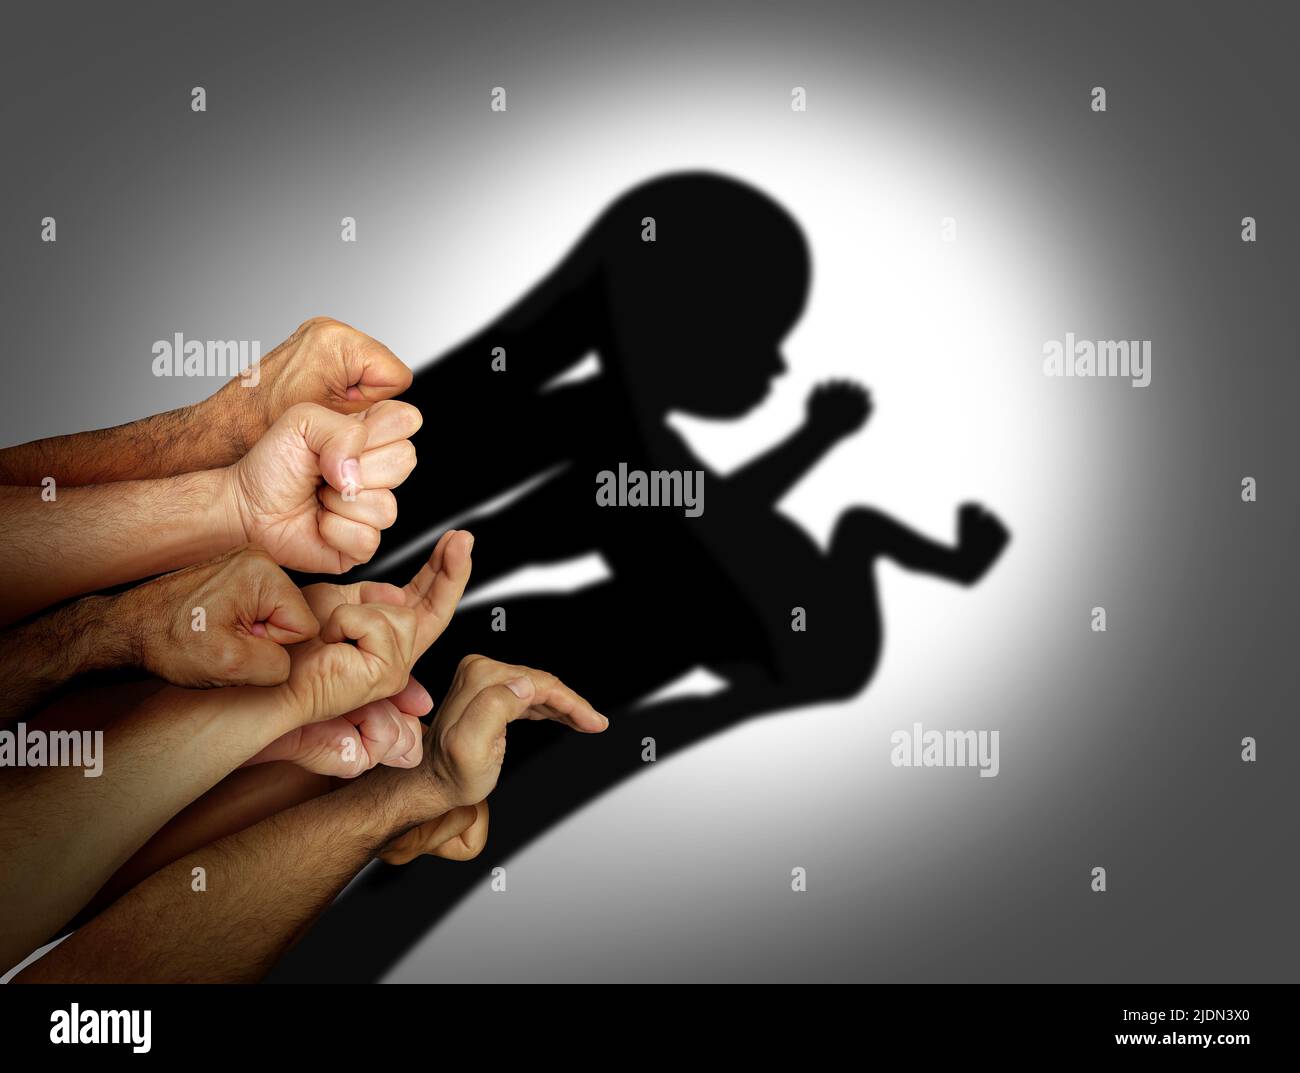 Gesellschaft und das Konzept des Ungeborenen, das die Rechte des Ungeborenen und Abtreibungsrechte oder die reproduktive Gesetzgebung in der Gemeinschaft repräsentiert. Stockfoto